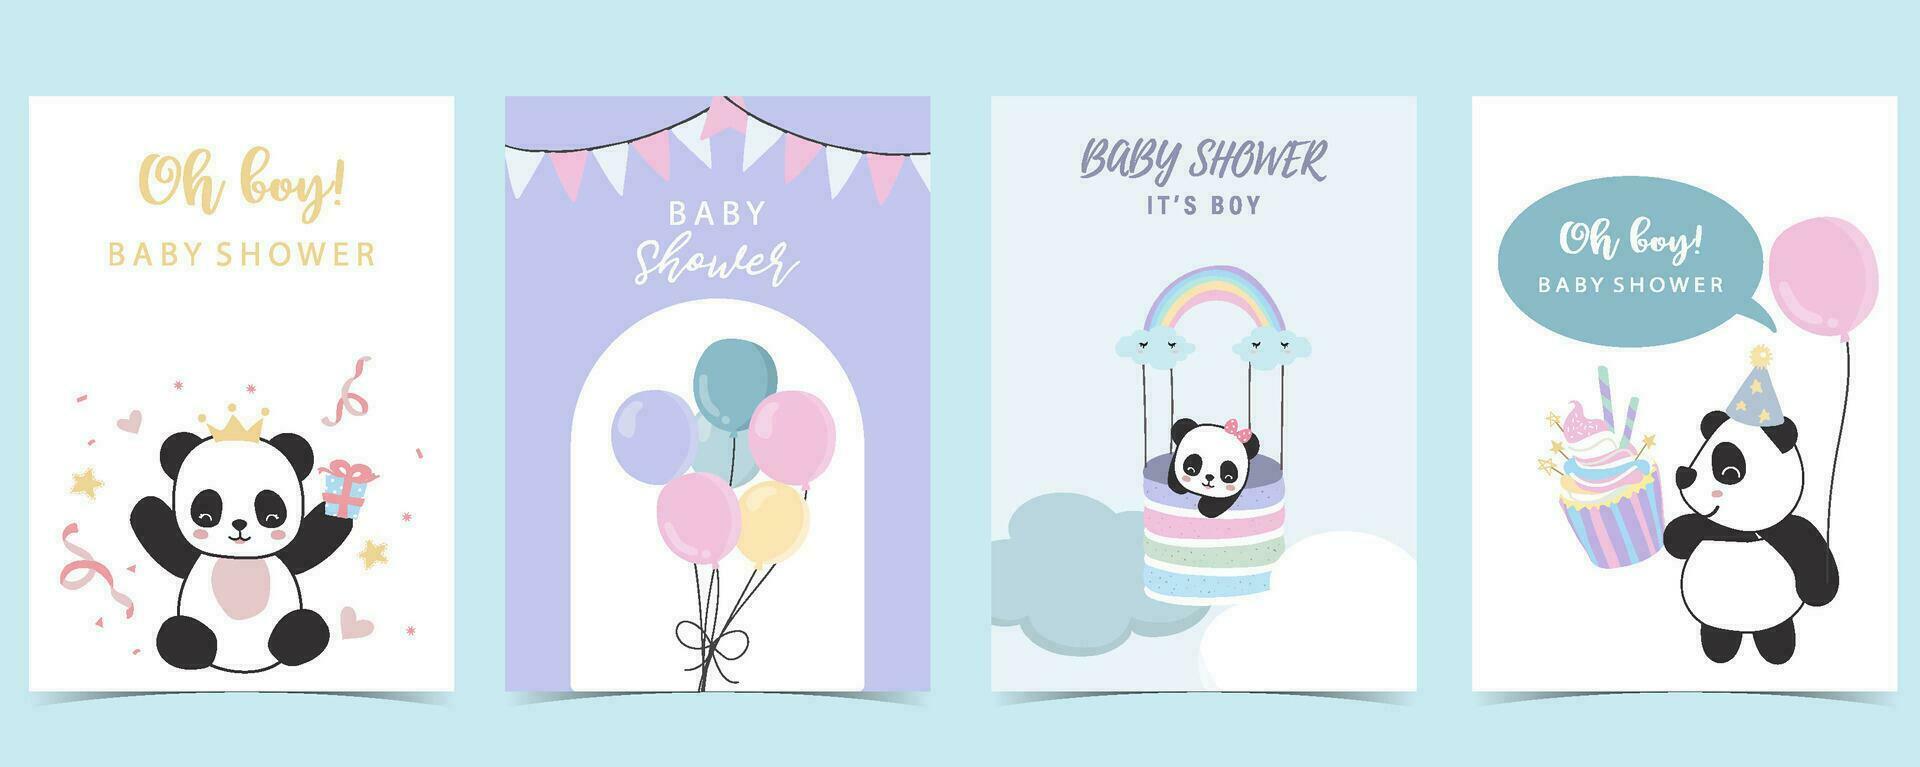 bebé ducha invitación tarjeta para chico con panda, nube, globo, azul vector